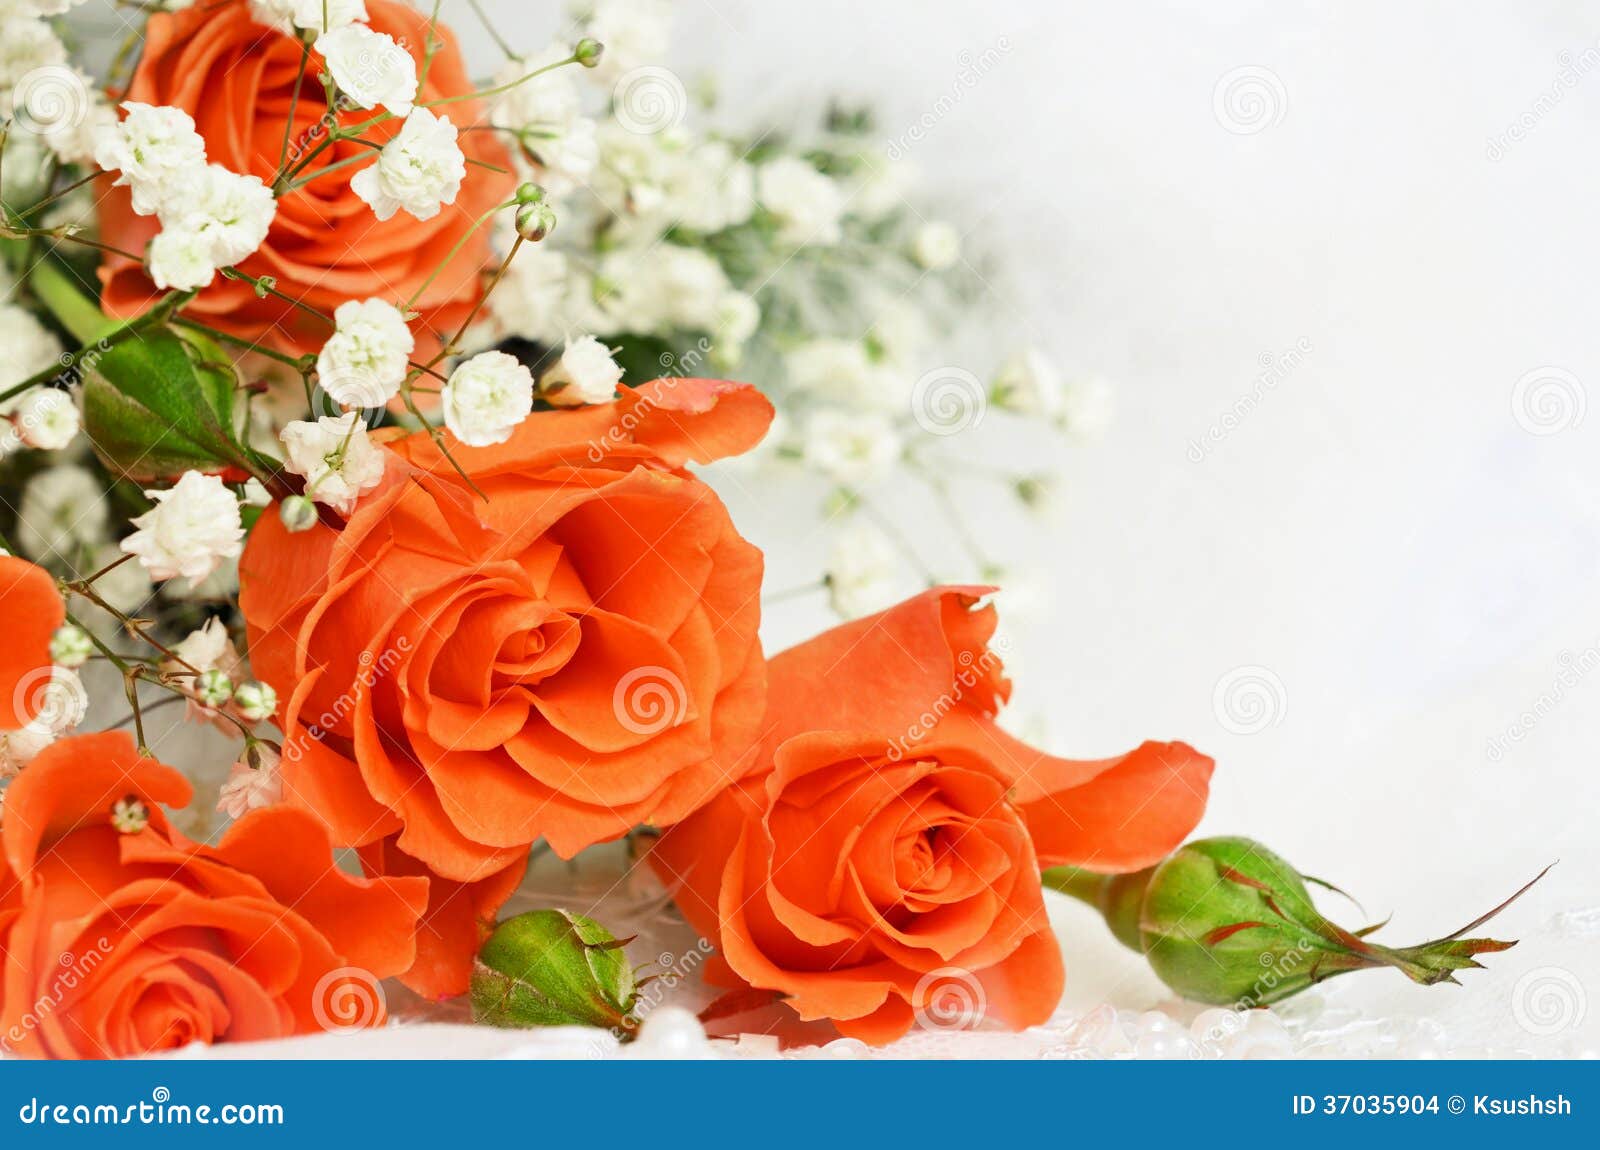 Cùng ngắm nhìn bức hình hoa hồng cam trên nền trắng tinh khôi đã tạo nên một sắc thái rực rỡ và cuốn hút. Hãy để màu sắc đầy tươi sáng này mang đến cho bạn những cảm xúc tuyệt vời nhất trong ngày mới.